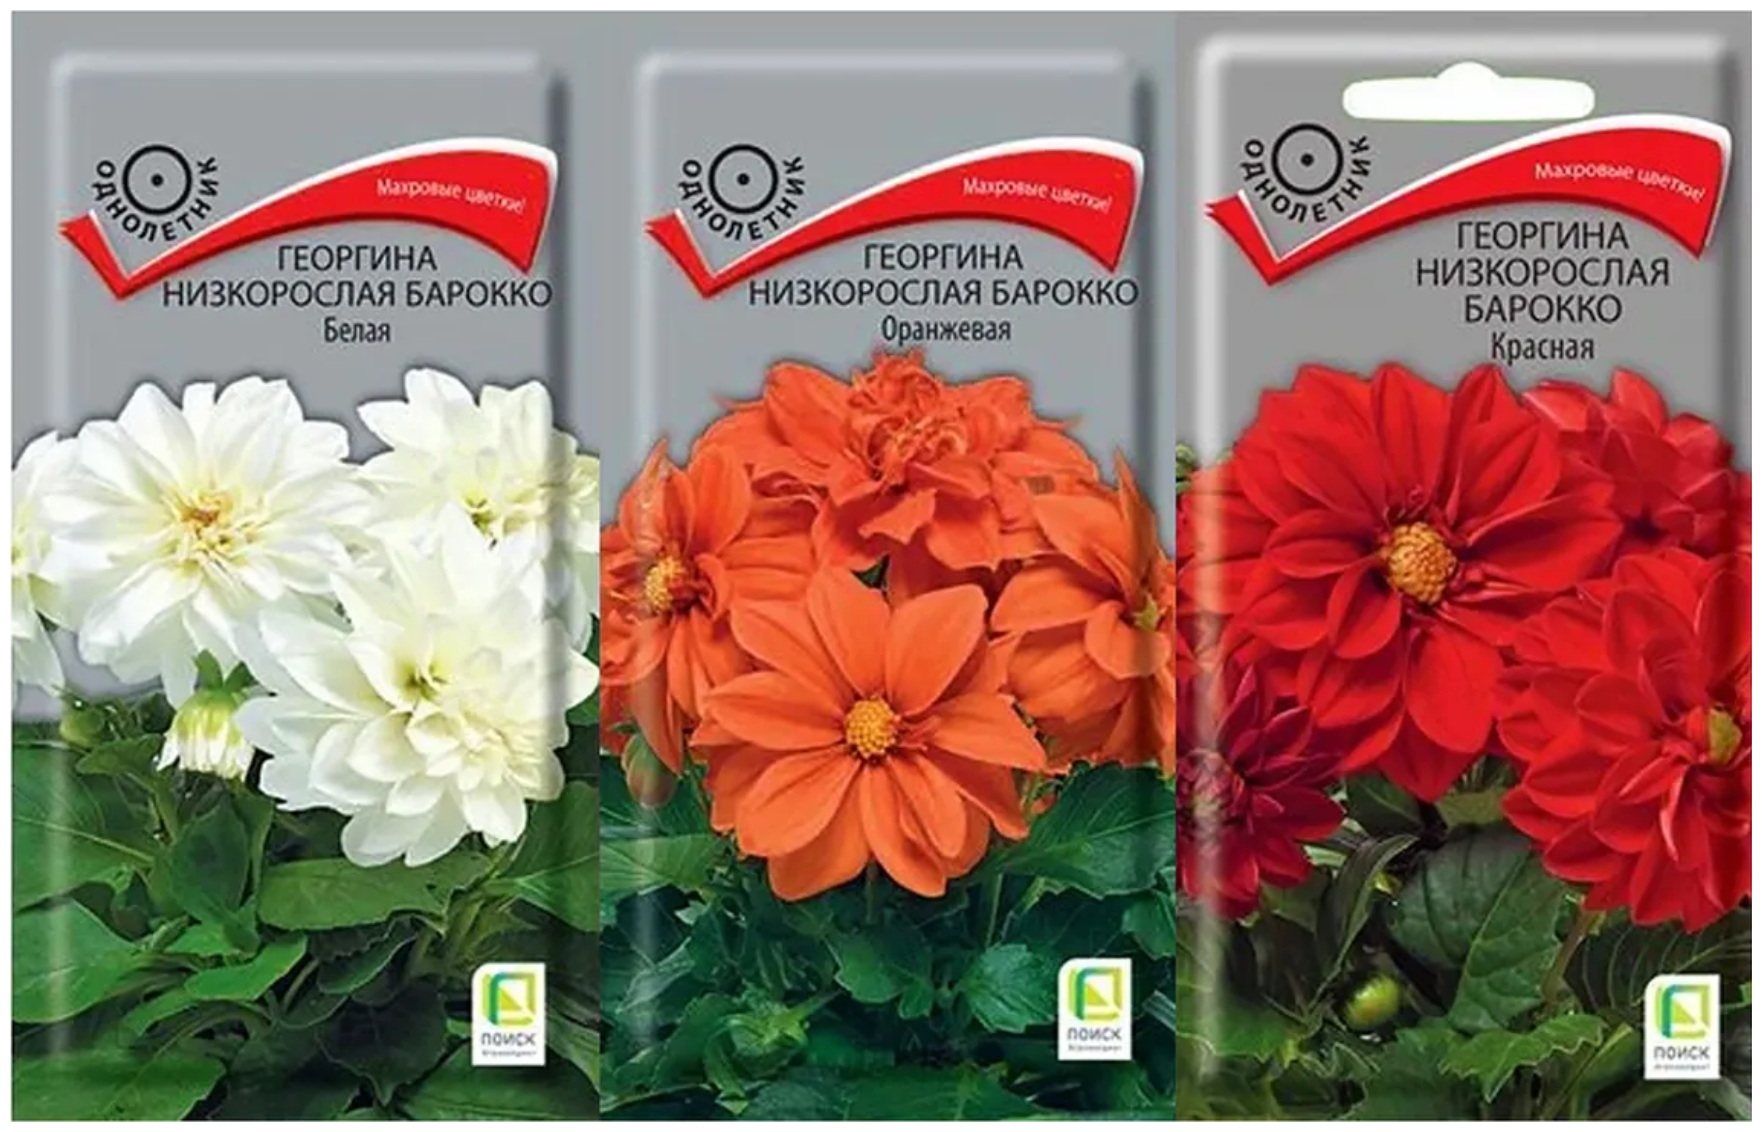 Набор семян цветов. Георгина низкорослая Барокко: красная оранжевая белая 3 упаковки.